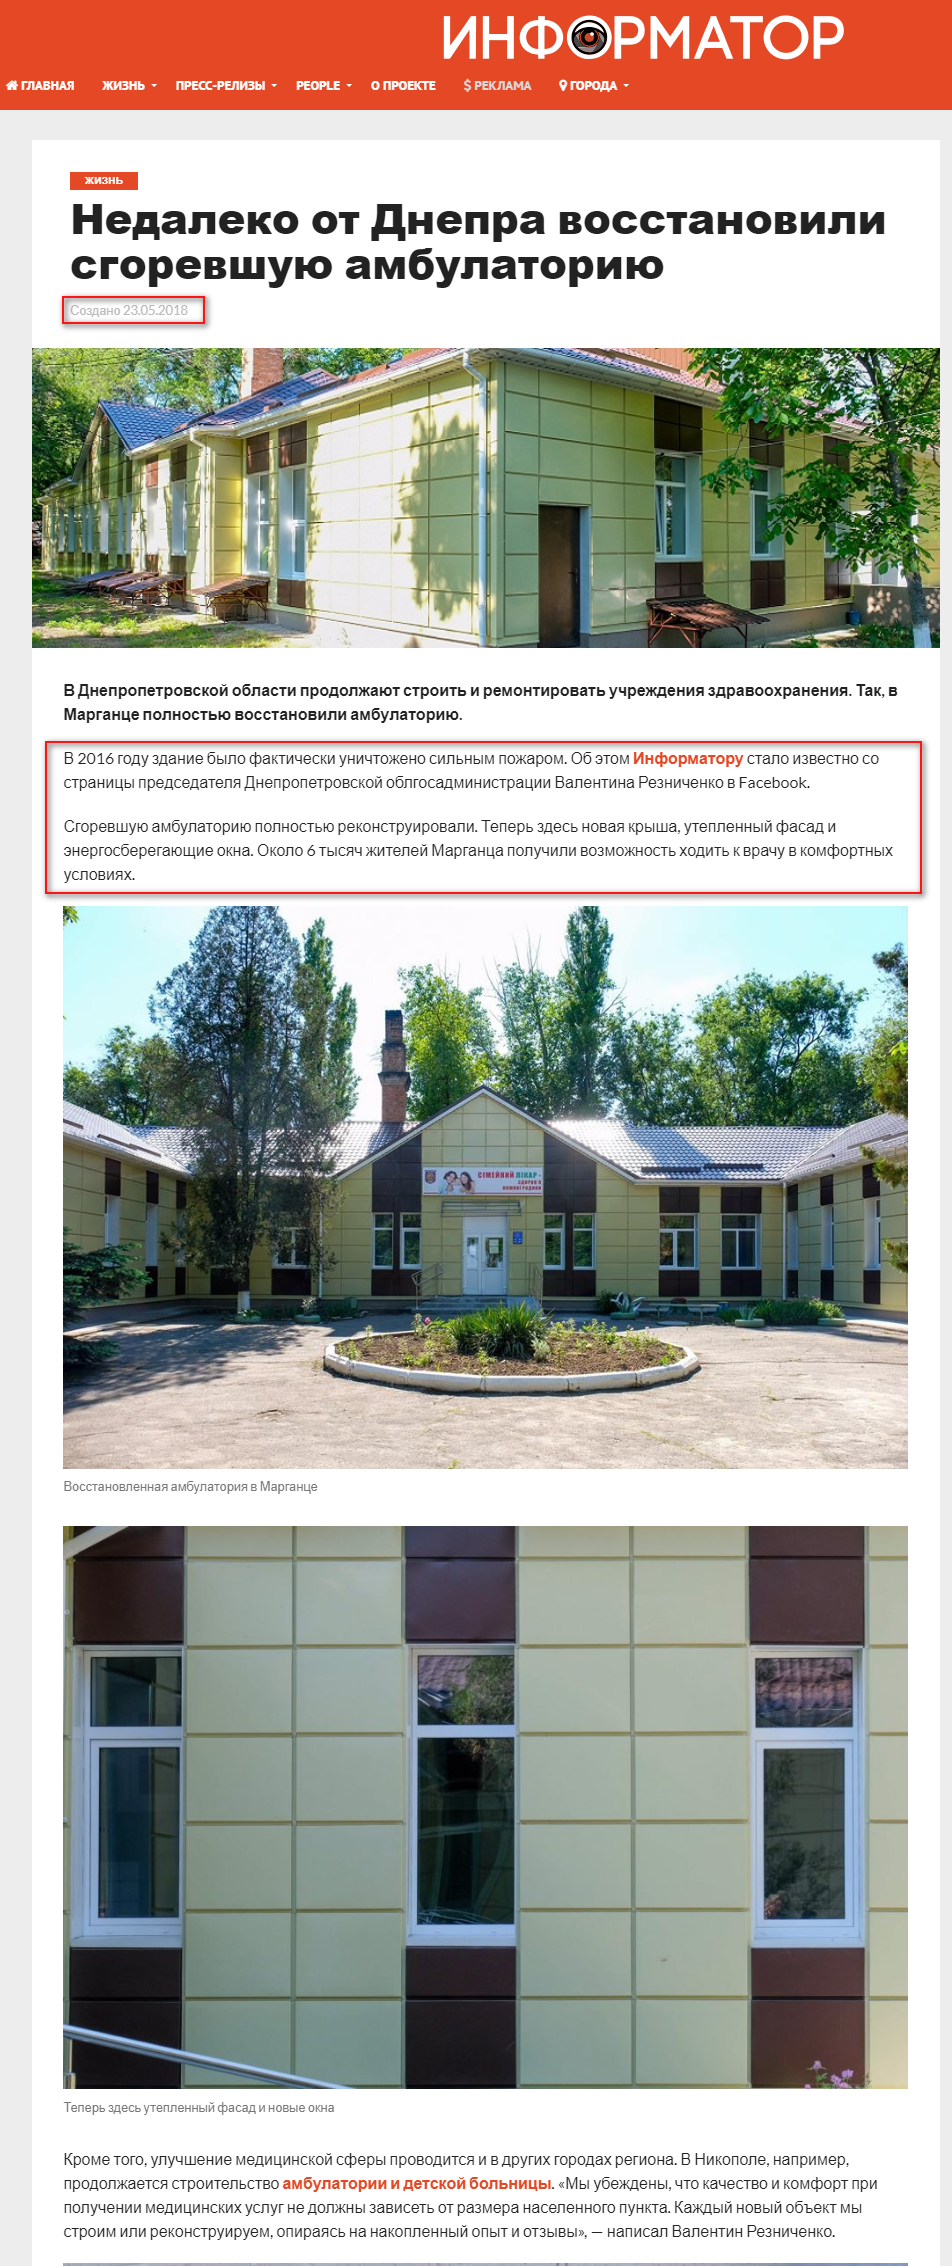 https://dp.informator.ua/2018/05/23/nedaleko-ot-dnepra-vosstanovili-sgorevshuyu-ambulatoriyu/